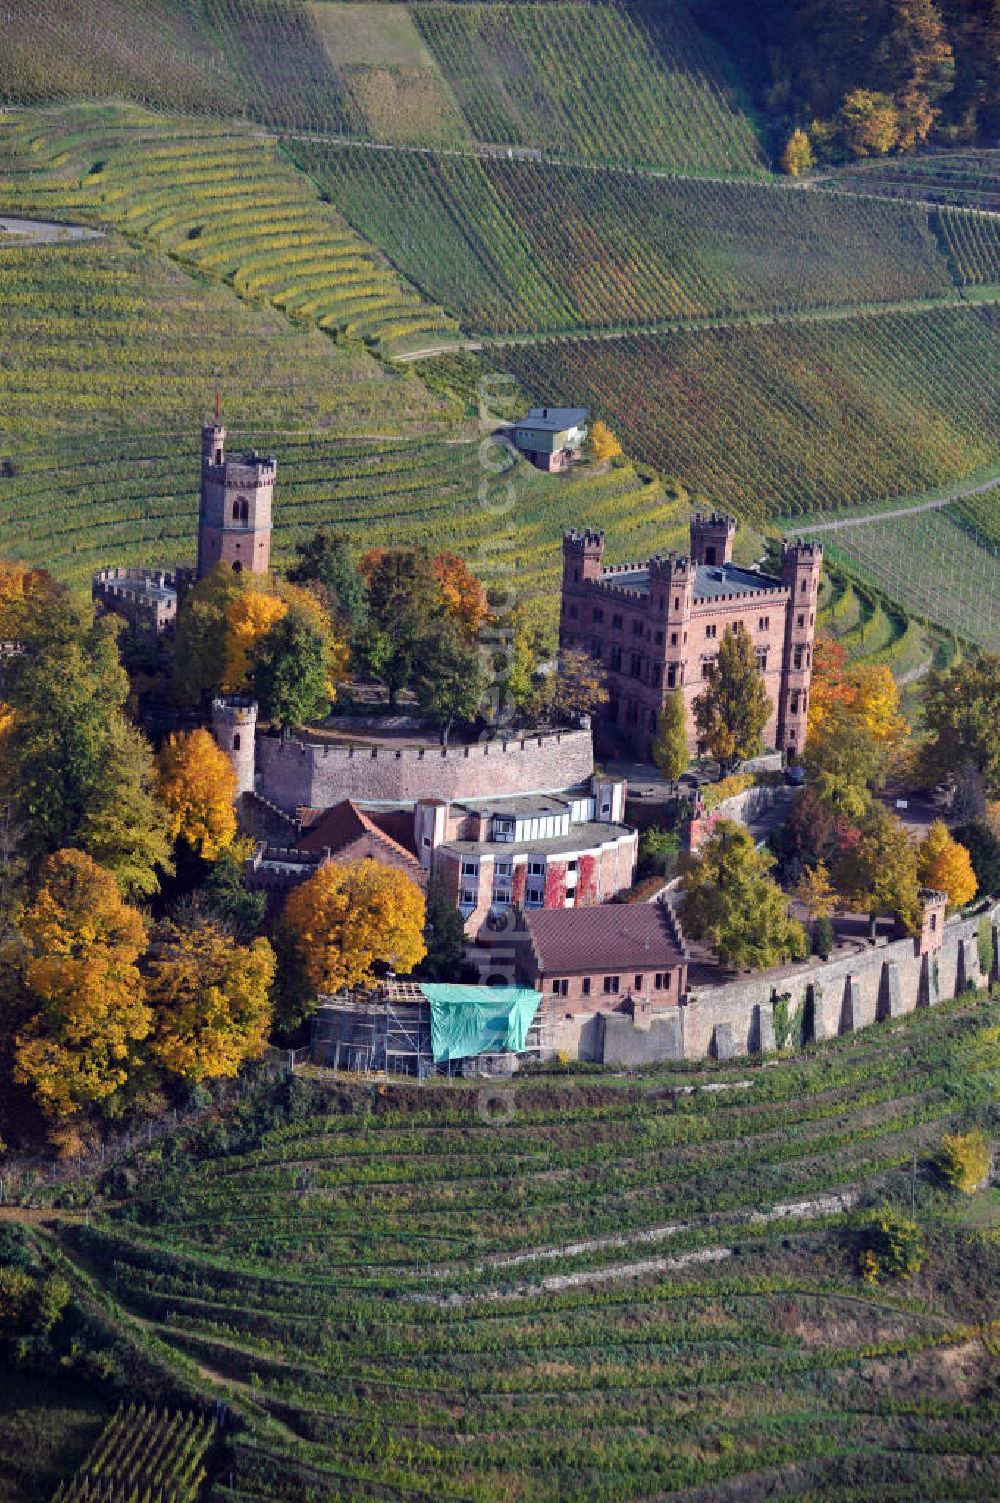 Aerial image Ortenberg - Das Schloß Ortenberg ist das Wahrzeichen der Ortenau. Es liegt auf einem Weinberg. The castle Ortenberg is the emblem of the region Ortenau. It is located in a vineyard.